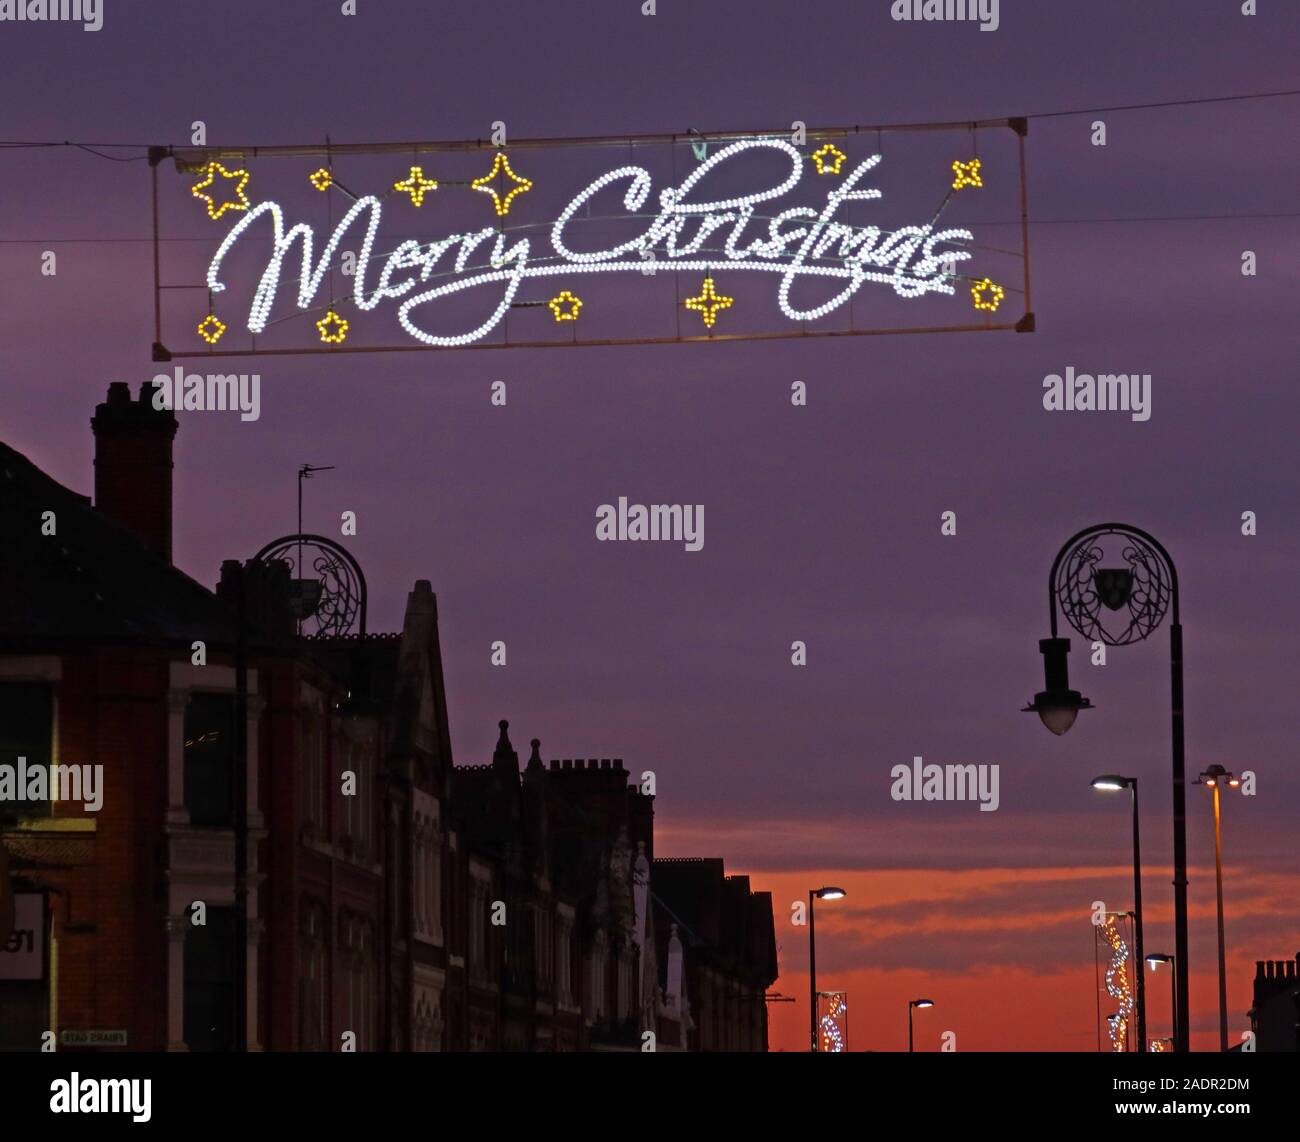 Coucher de soleil sur Bridge Street Warrington, avec bannière Joyeux Noël, Cheshire, Angleterre, Royaume-Uni, WA1 2QW Banque D'Images